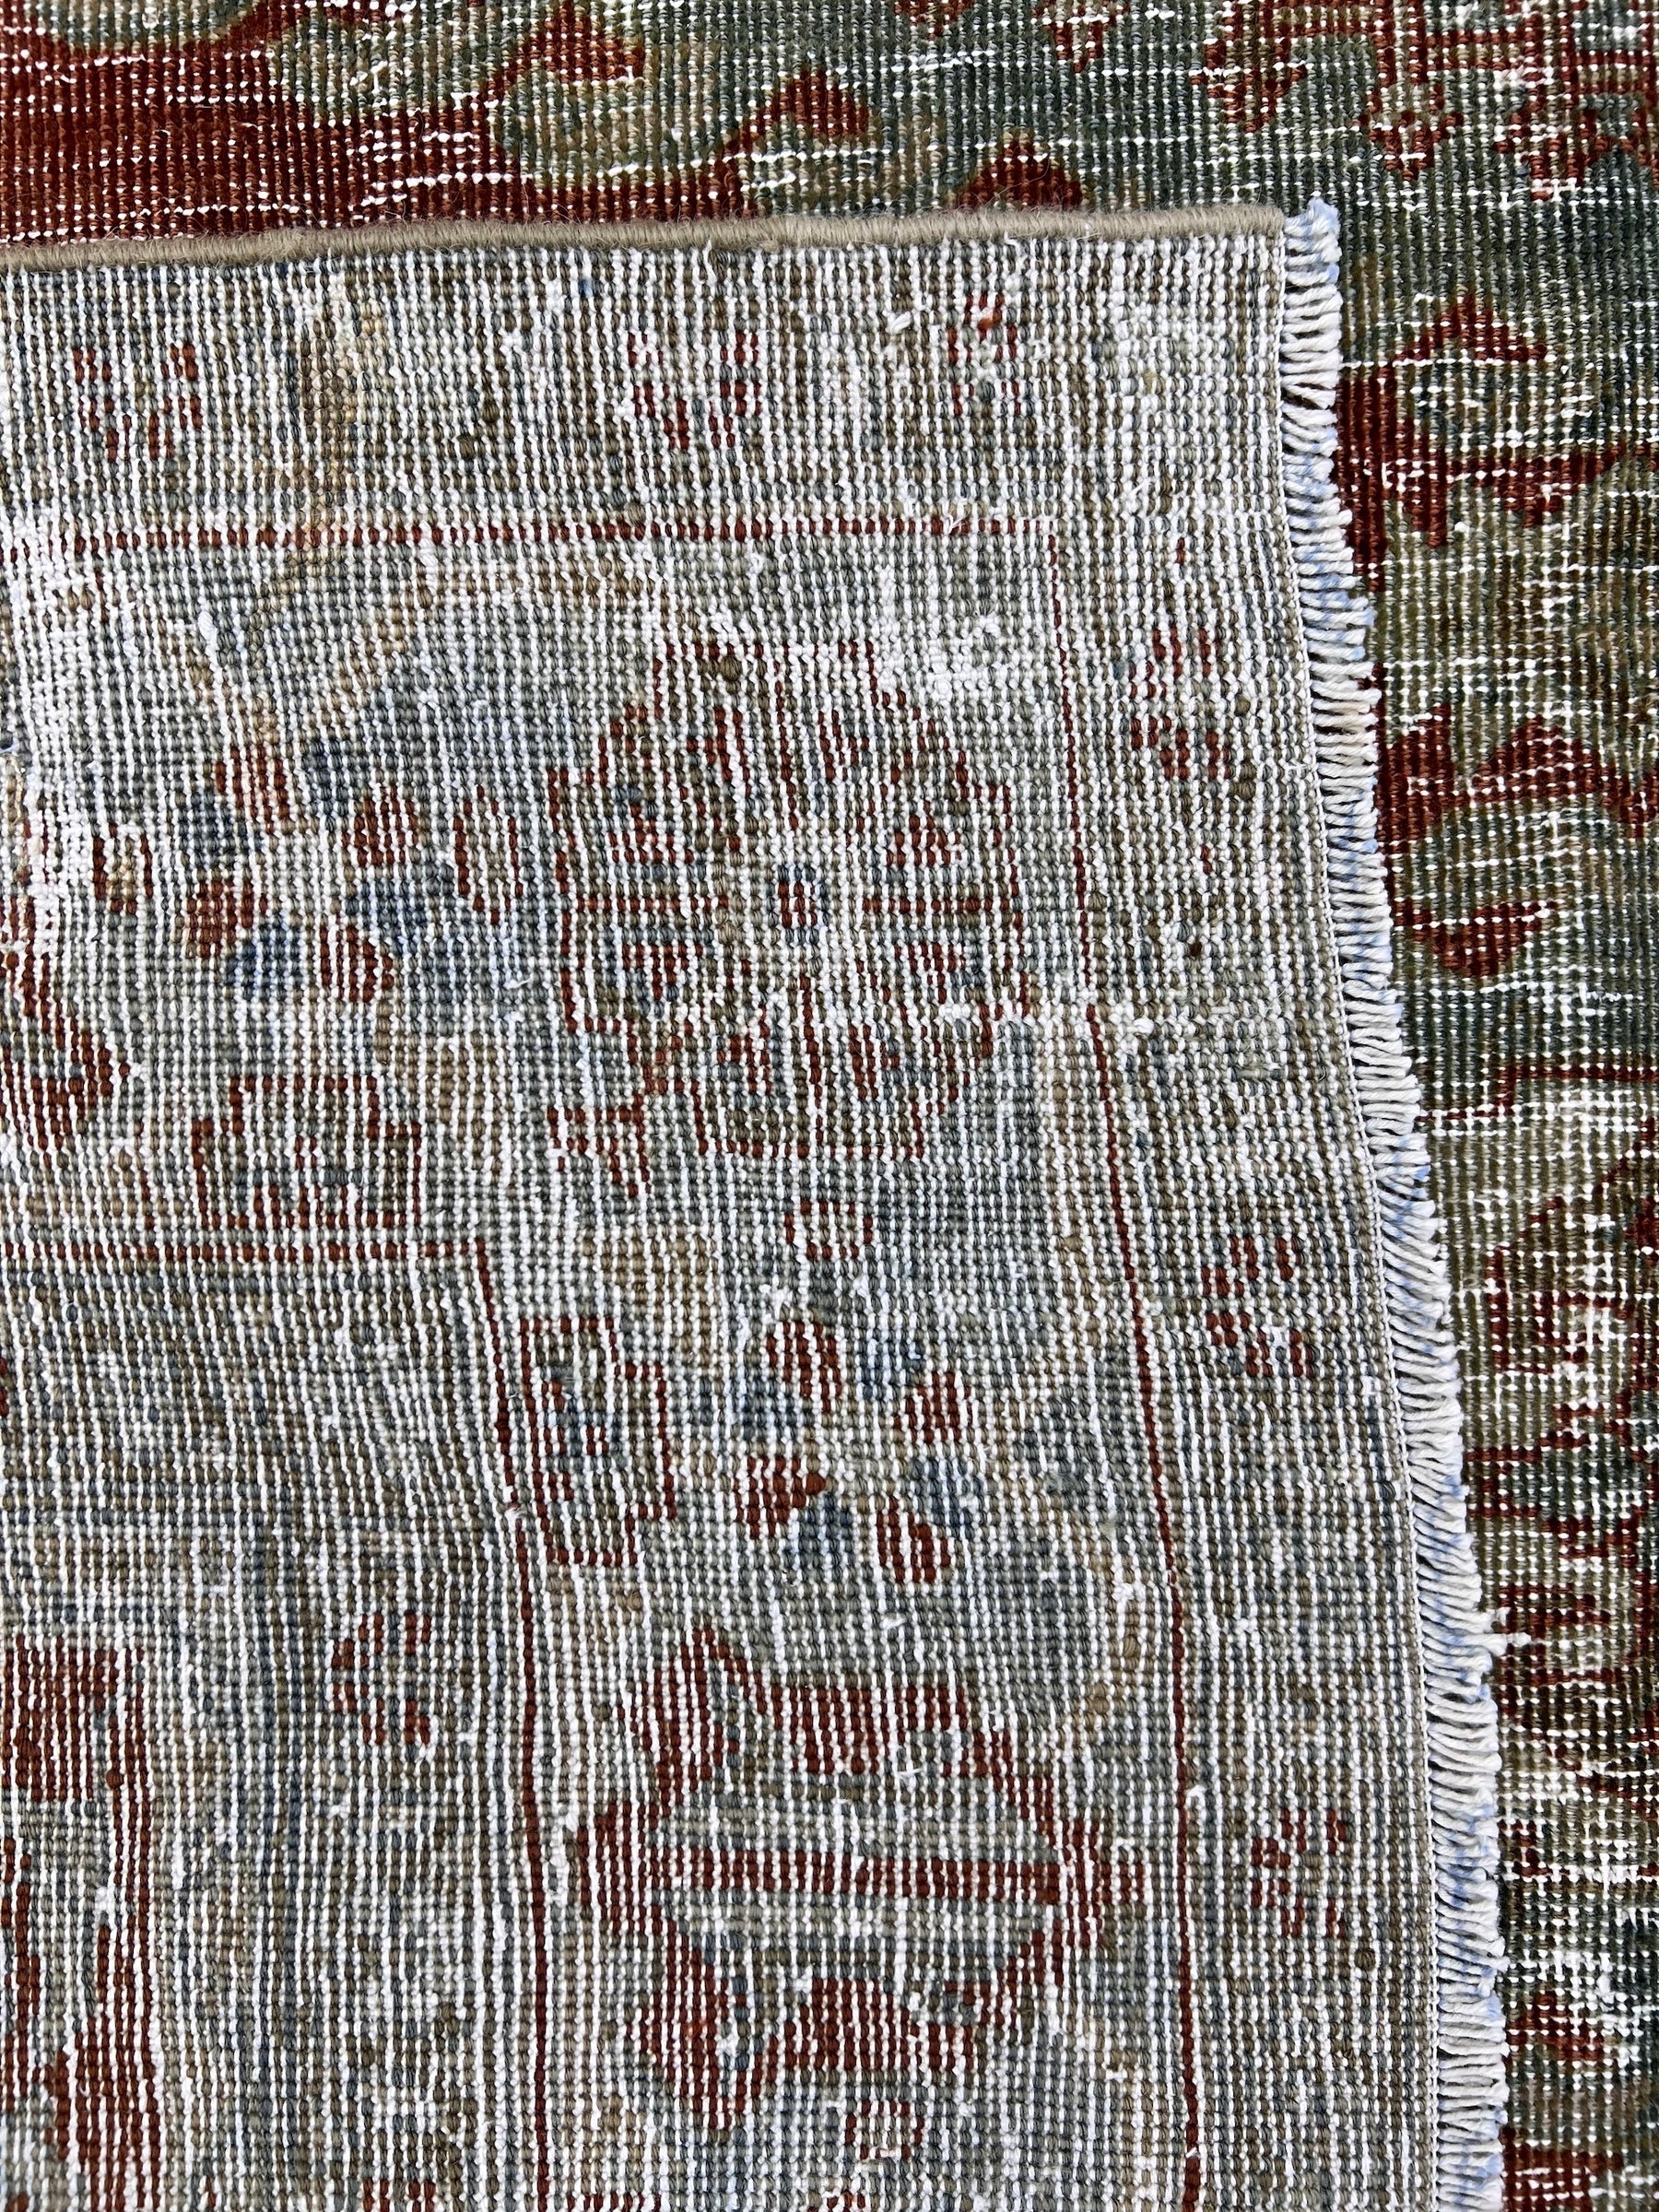 Gudren - Vintage Persian Rug